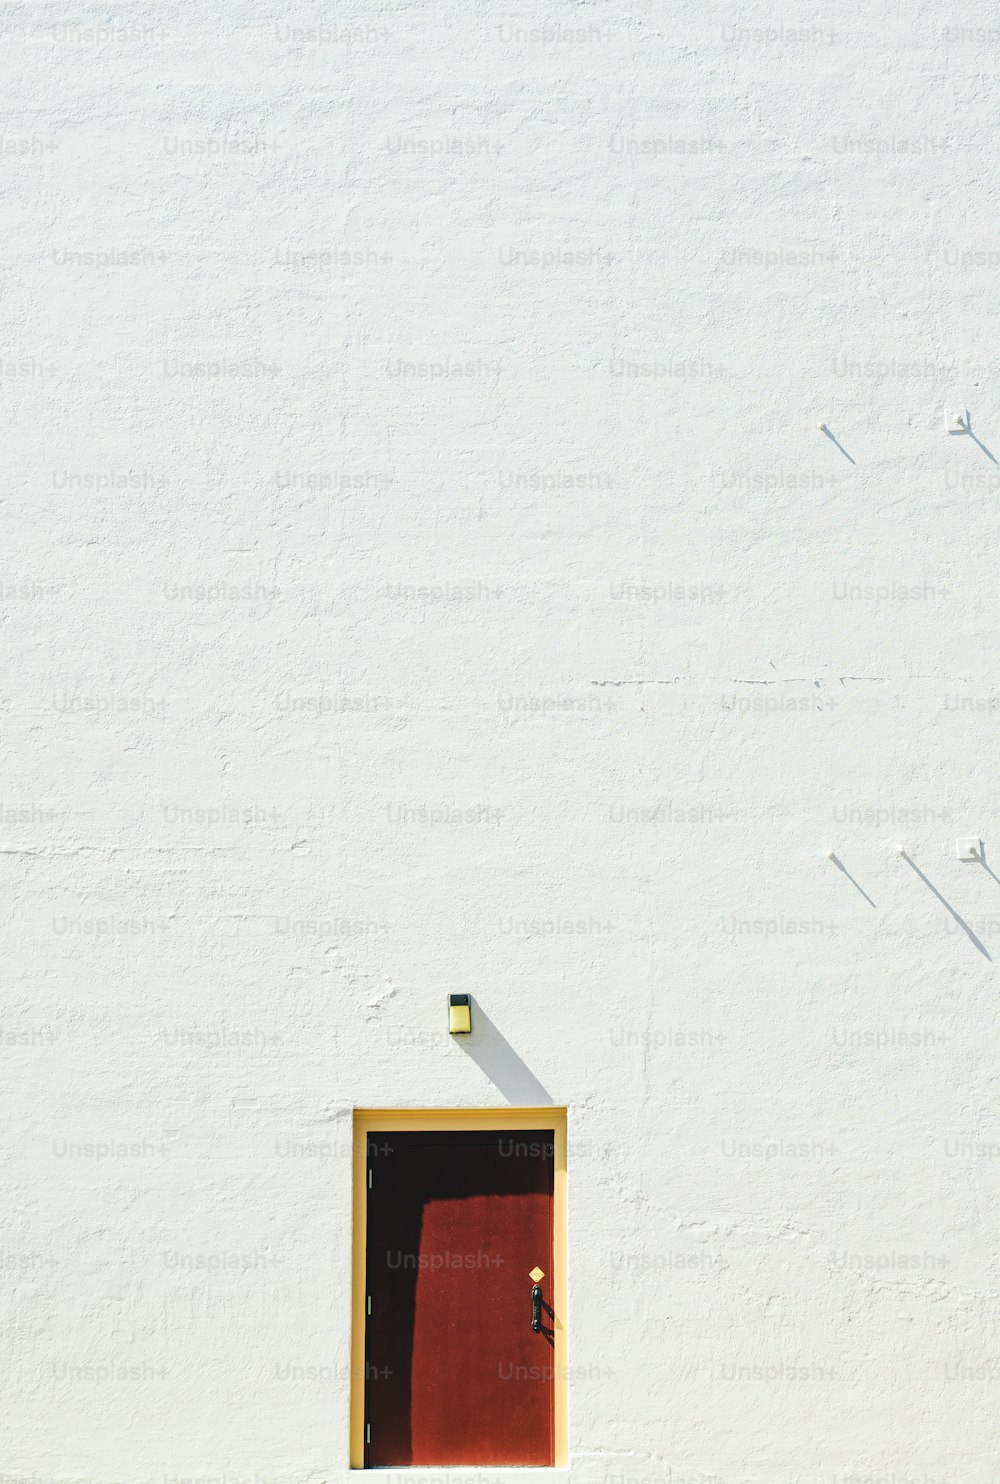 빨간 문과 노란 문이있는 흰색 건물